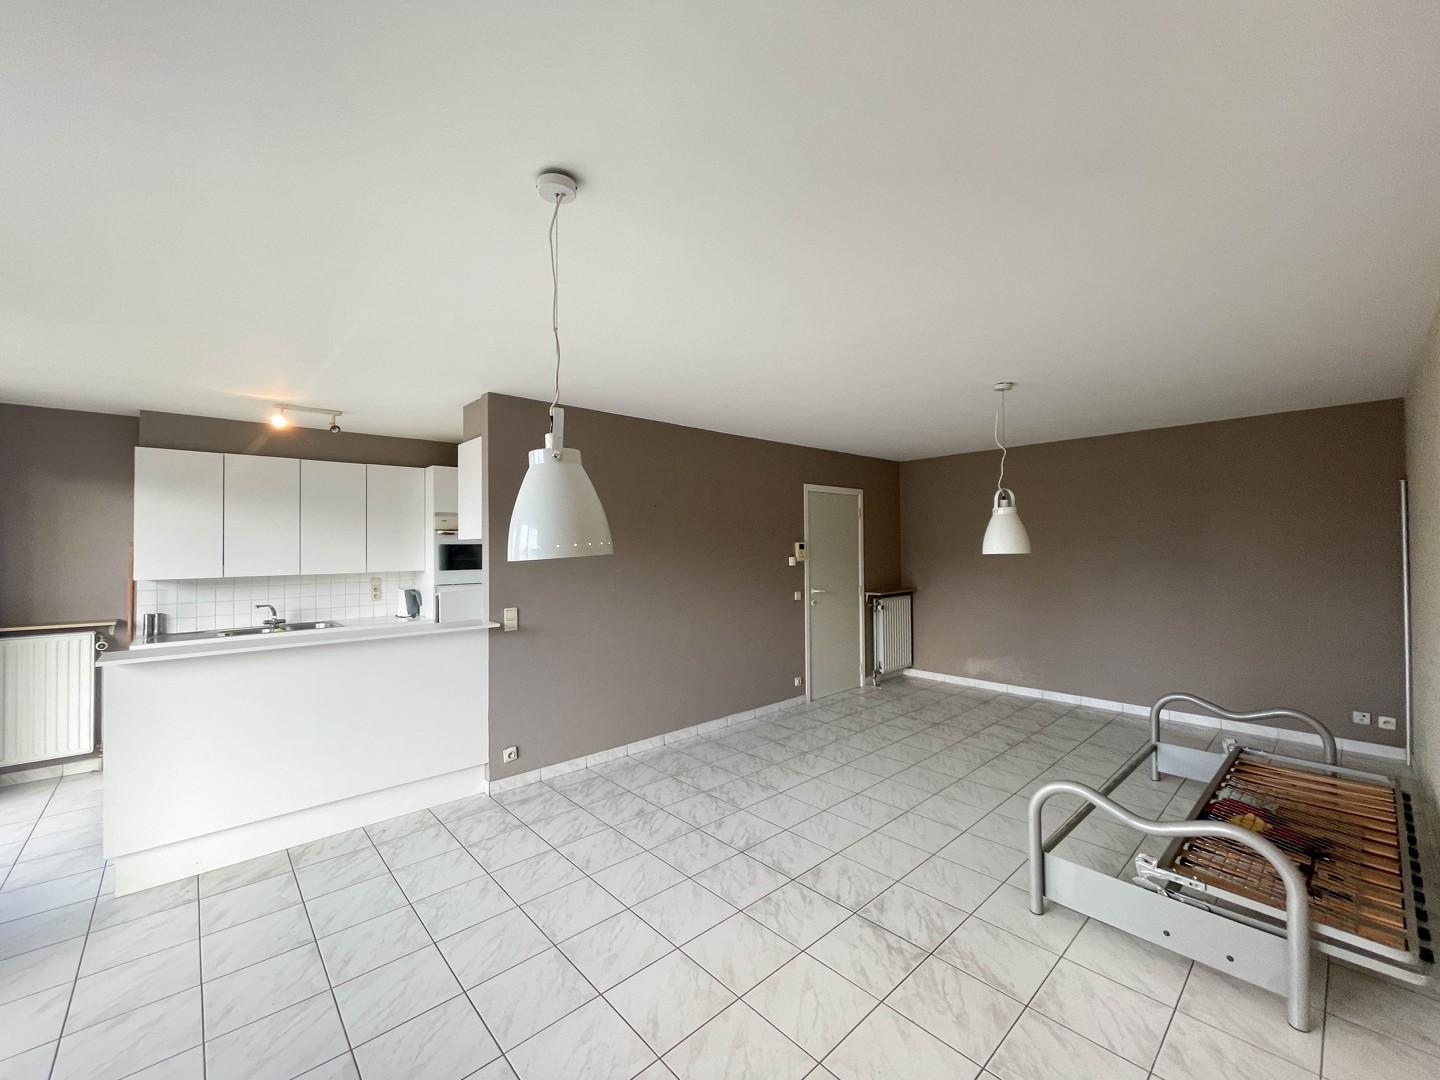 Instapklaar & centraal gelegen appartement met balkon te Roeselare!